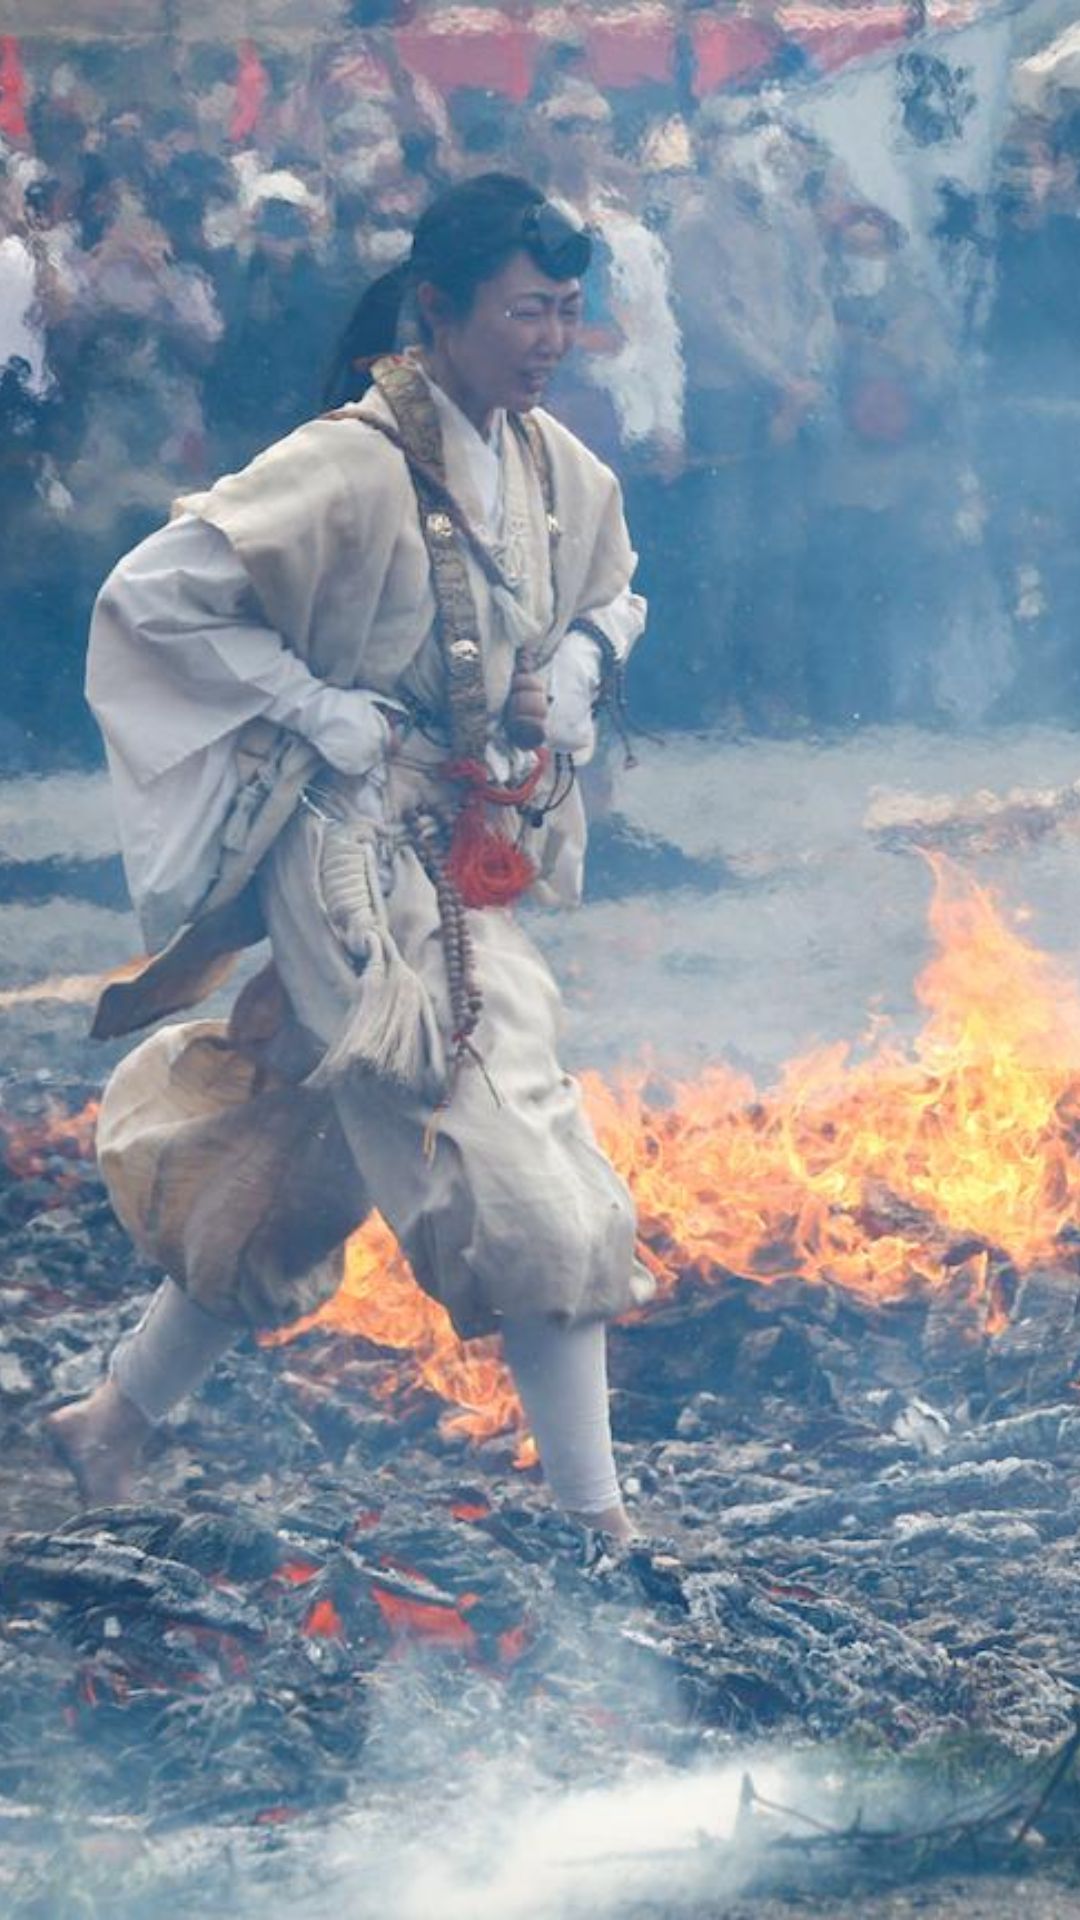 जलते आग के अंगारों पर नंगे पैर चलने का जापान का हैरतअंगेज उत्सव, जानें क्यों ऐसा करते हैं लोग